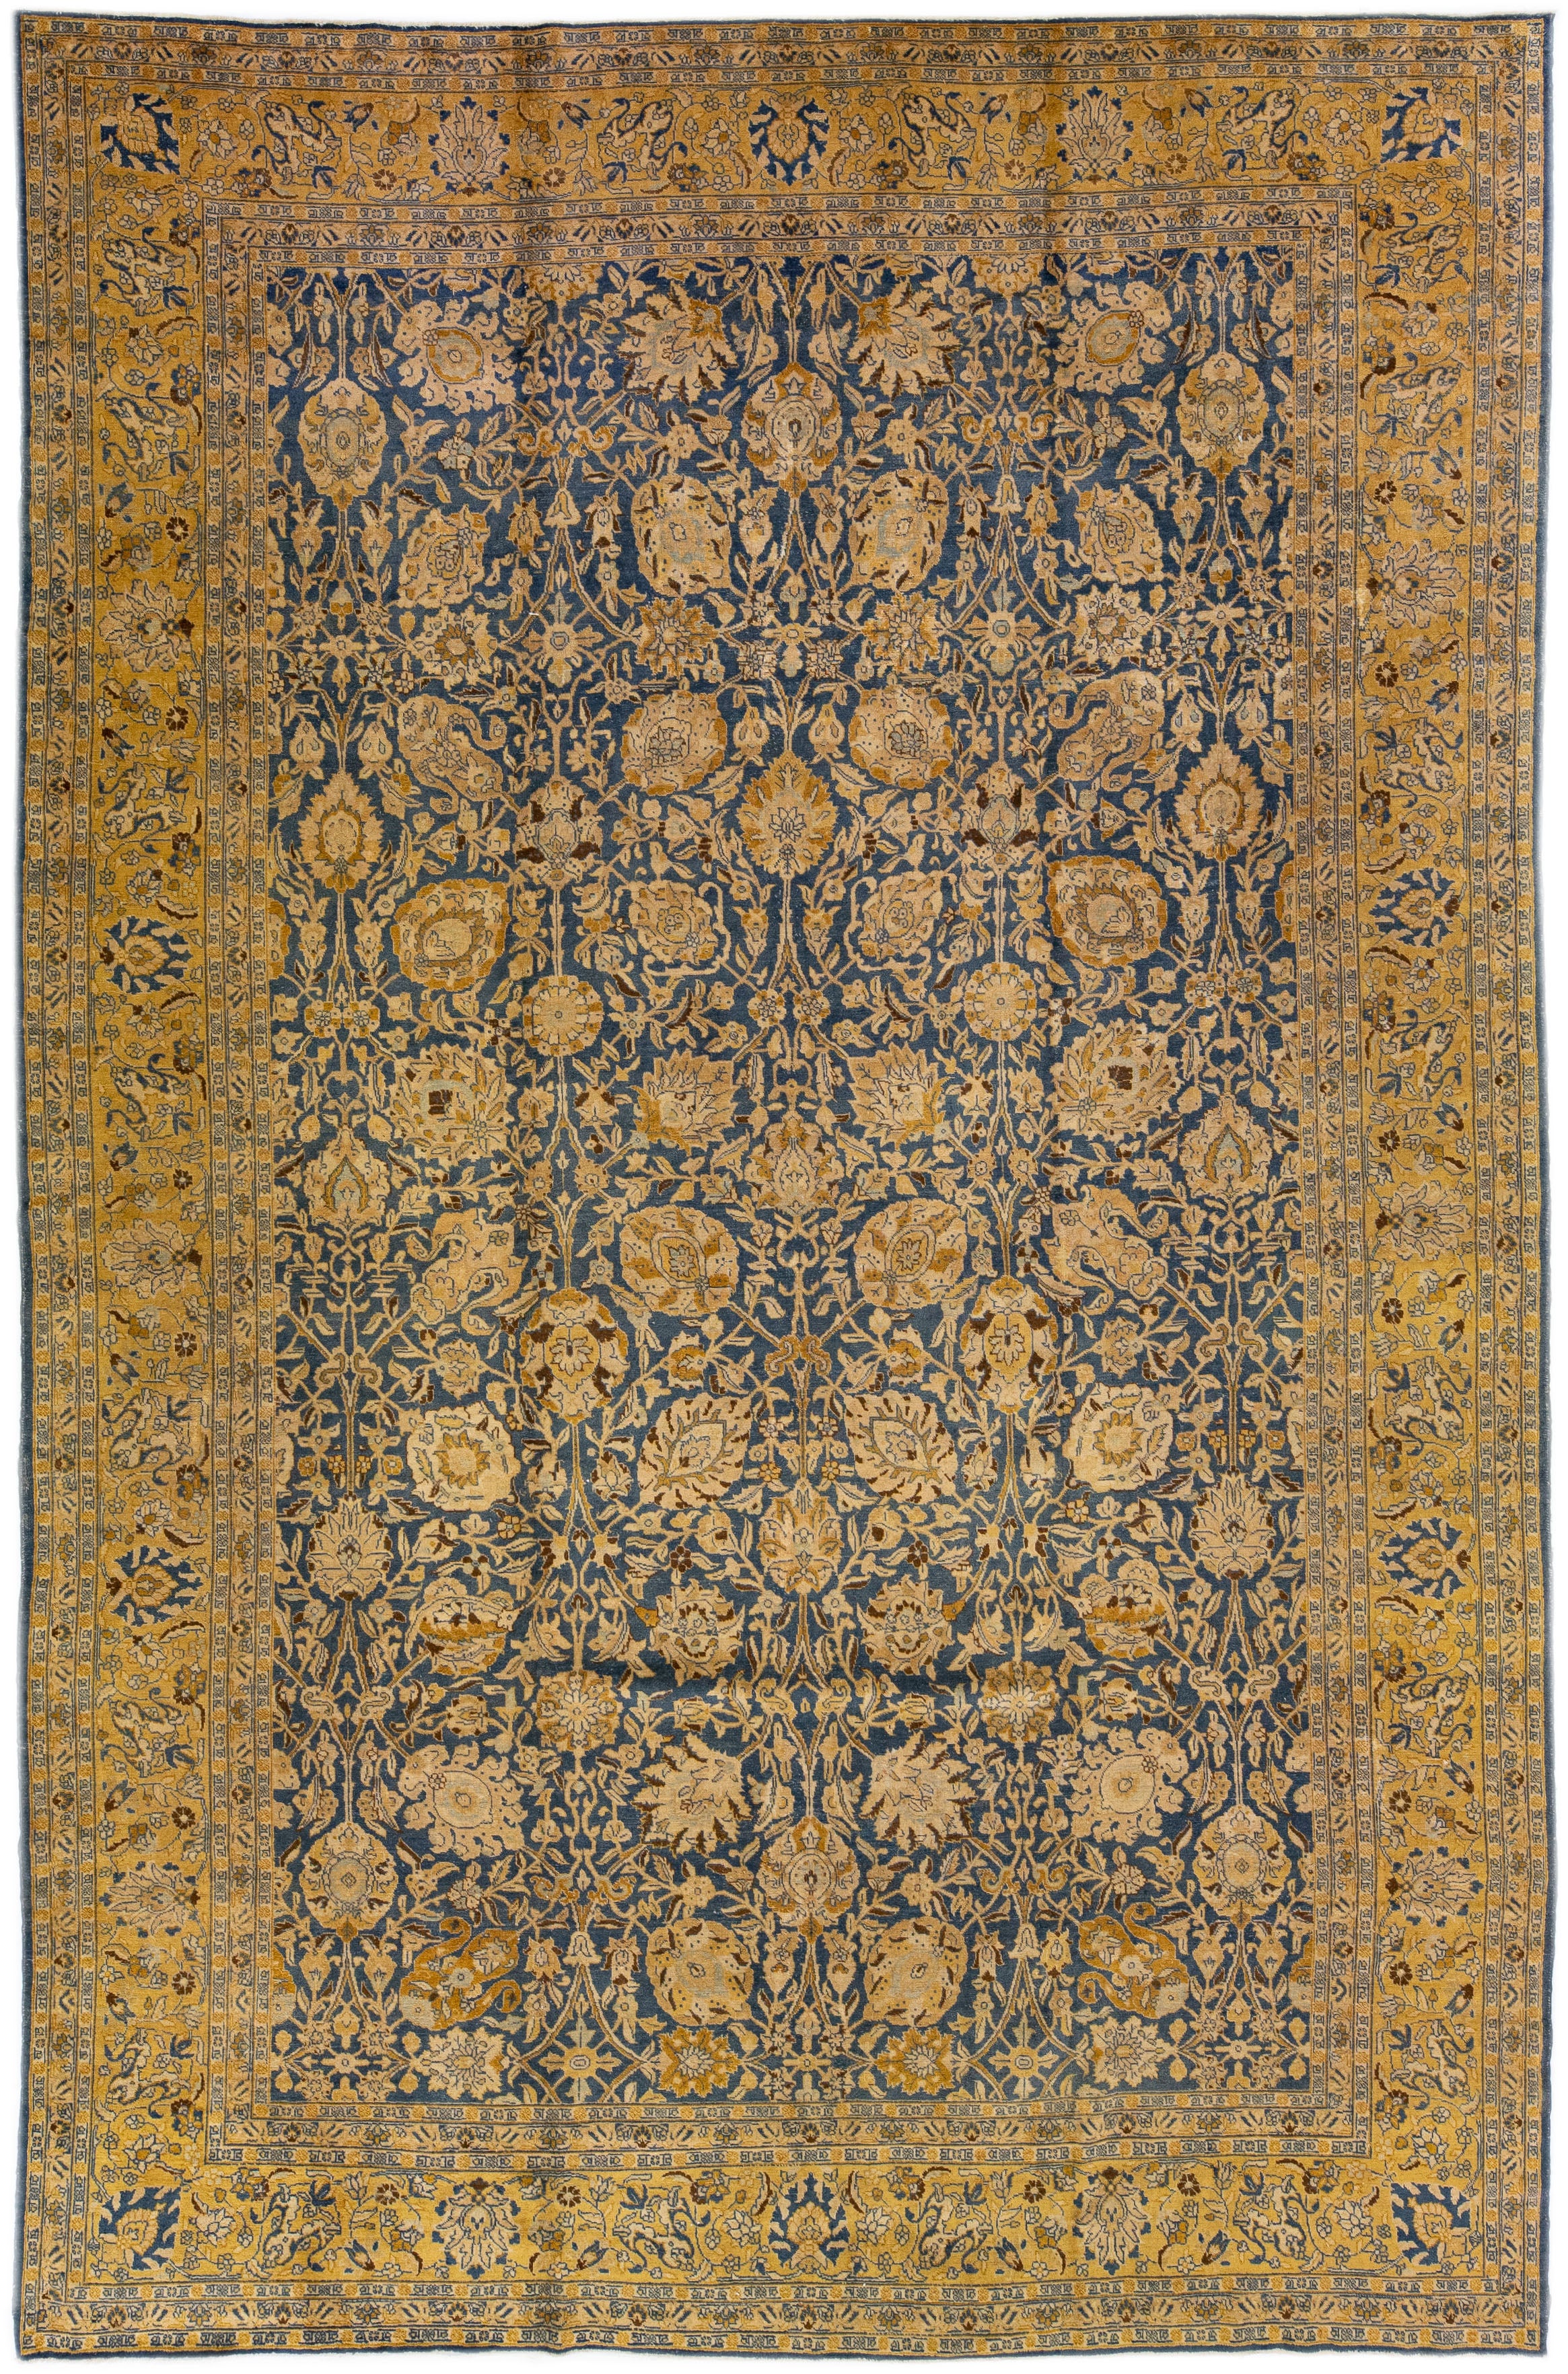 Tapis persan ancien en laine bleu de Tabriz, fait à la main, à motifs floraux surdimensionnés